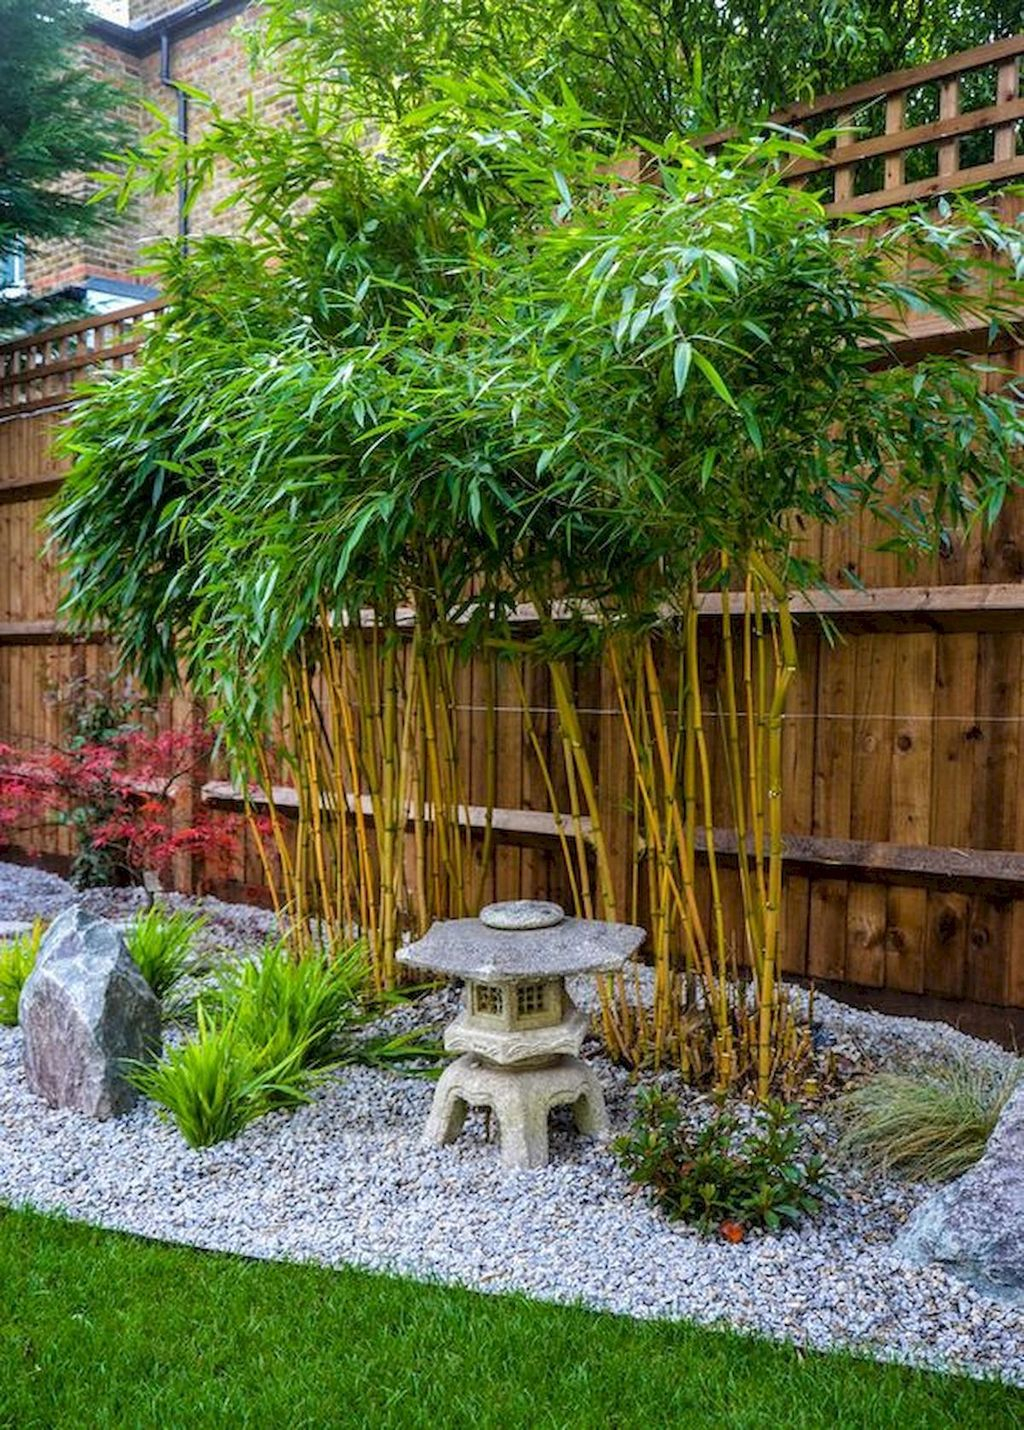 Vintage Zen Gardens Design Decor Ideas For Backyard04